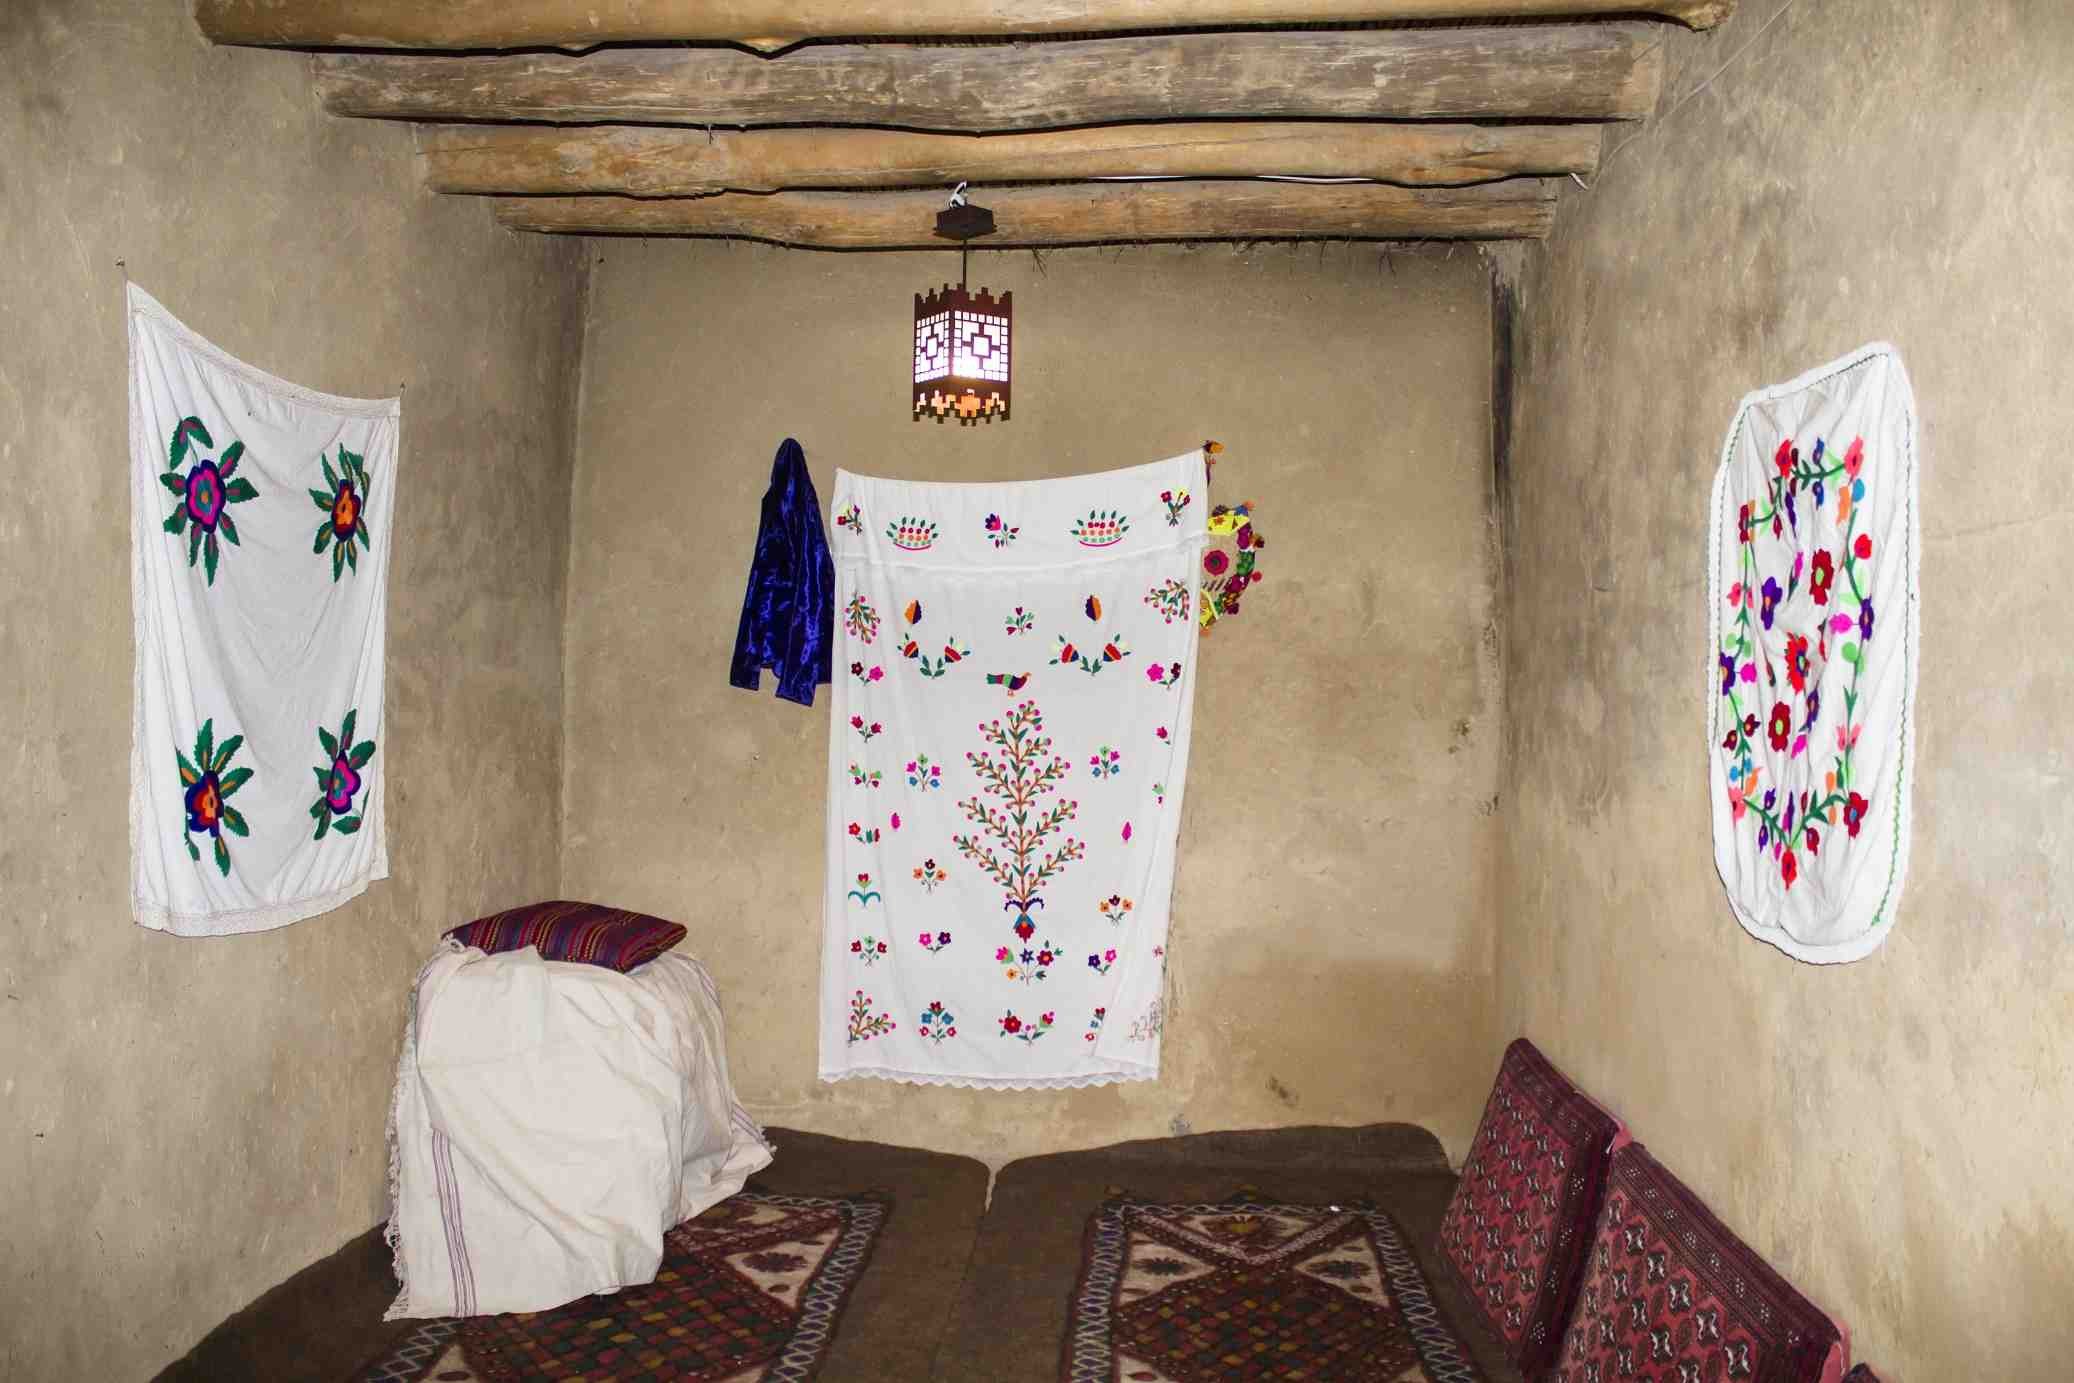 بوم گردی اجاره اقامتگاه بومگردی و اتاق سنتی در قلعه بالا بیارجمند